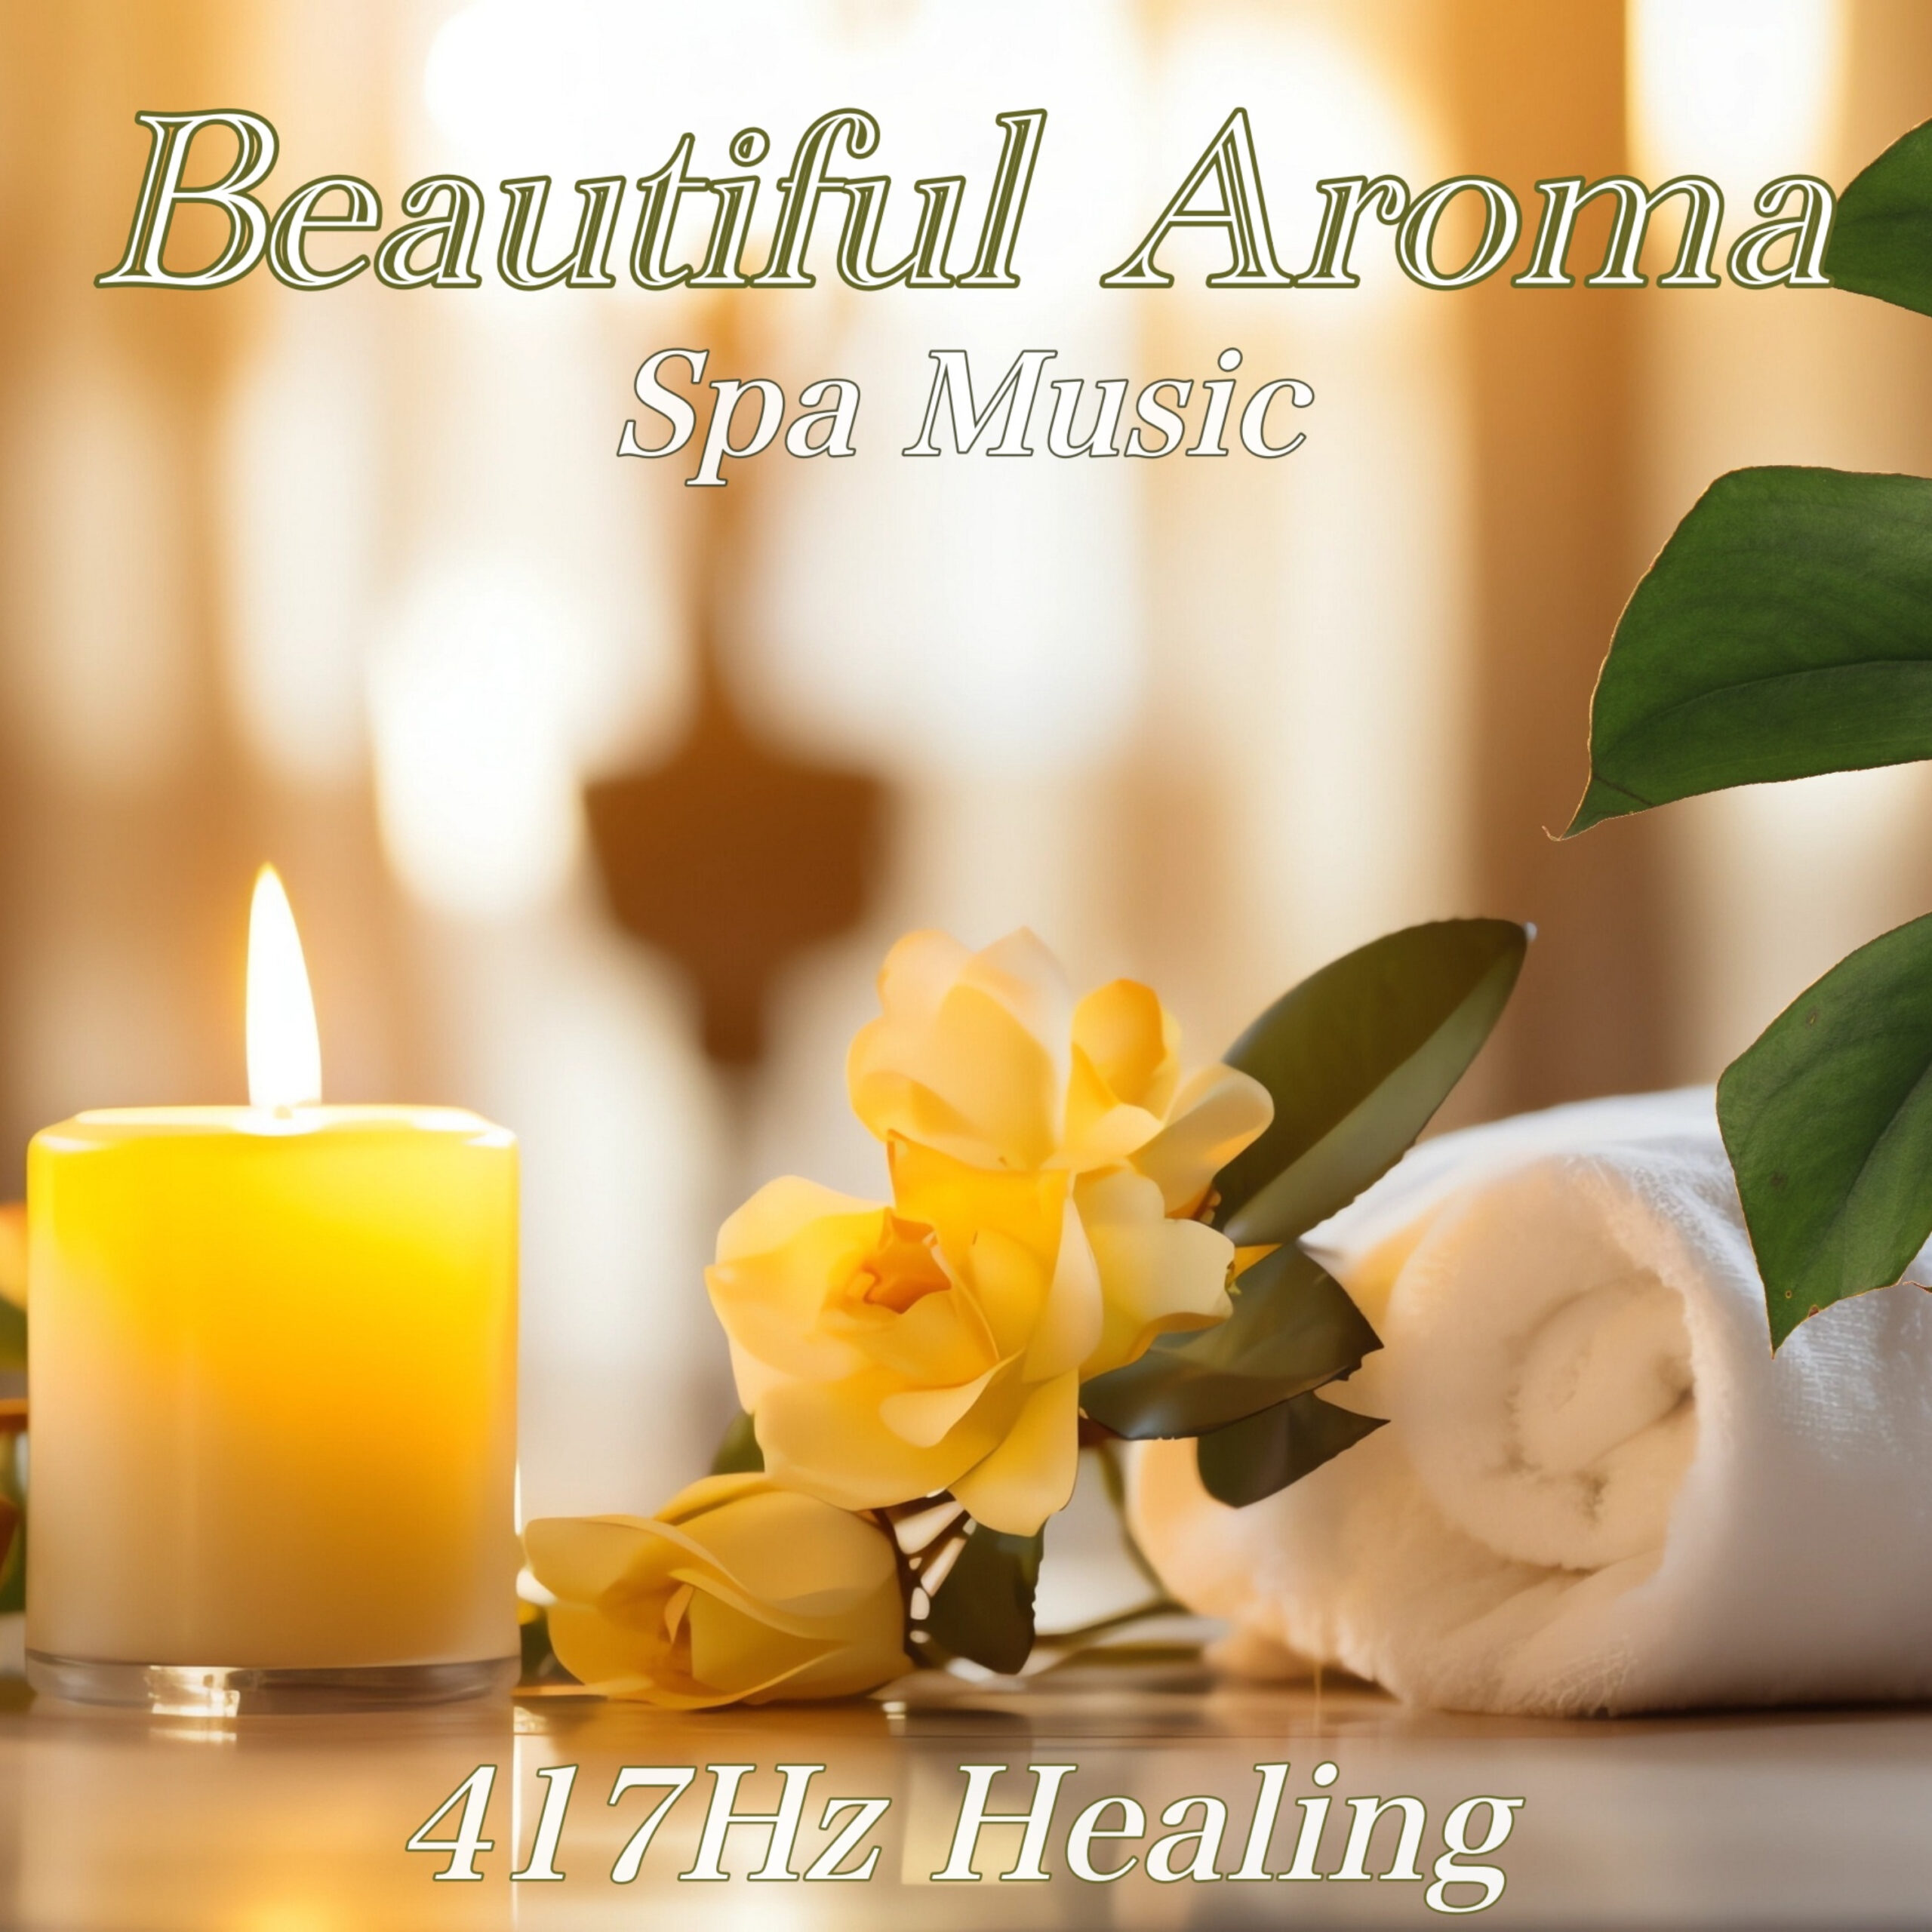 Beautiful Aroma Spa Music 快眠のためのリラックス音楽 睡眠の質を高めるアンビエントの睡眠音楽